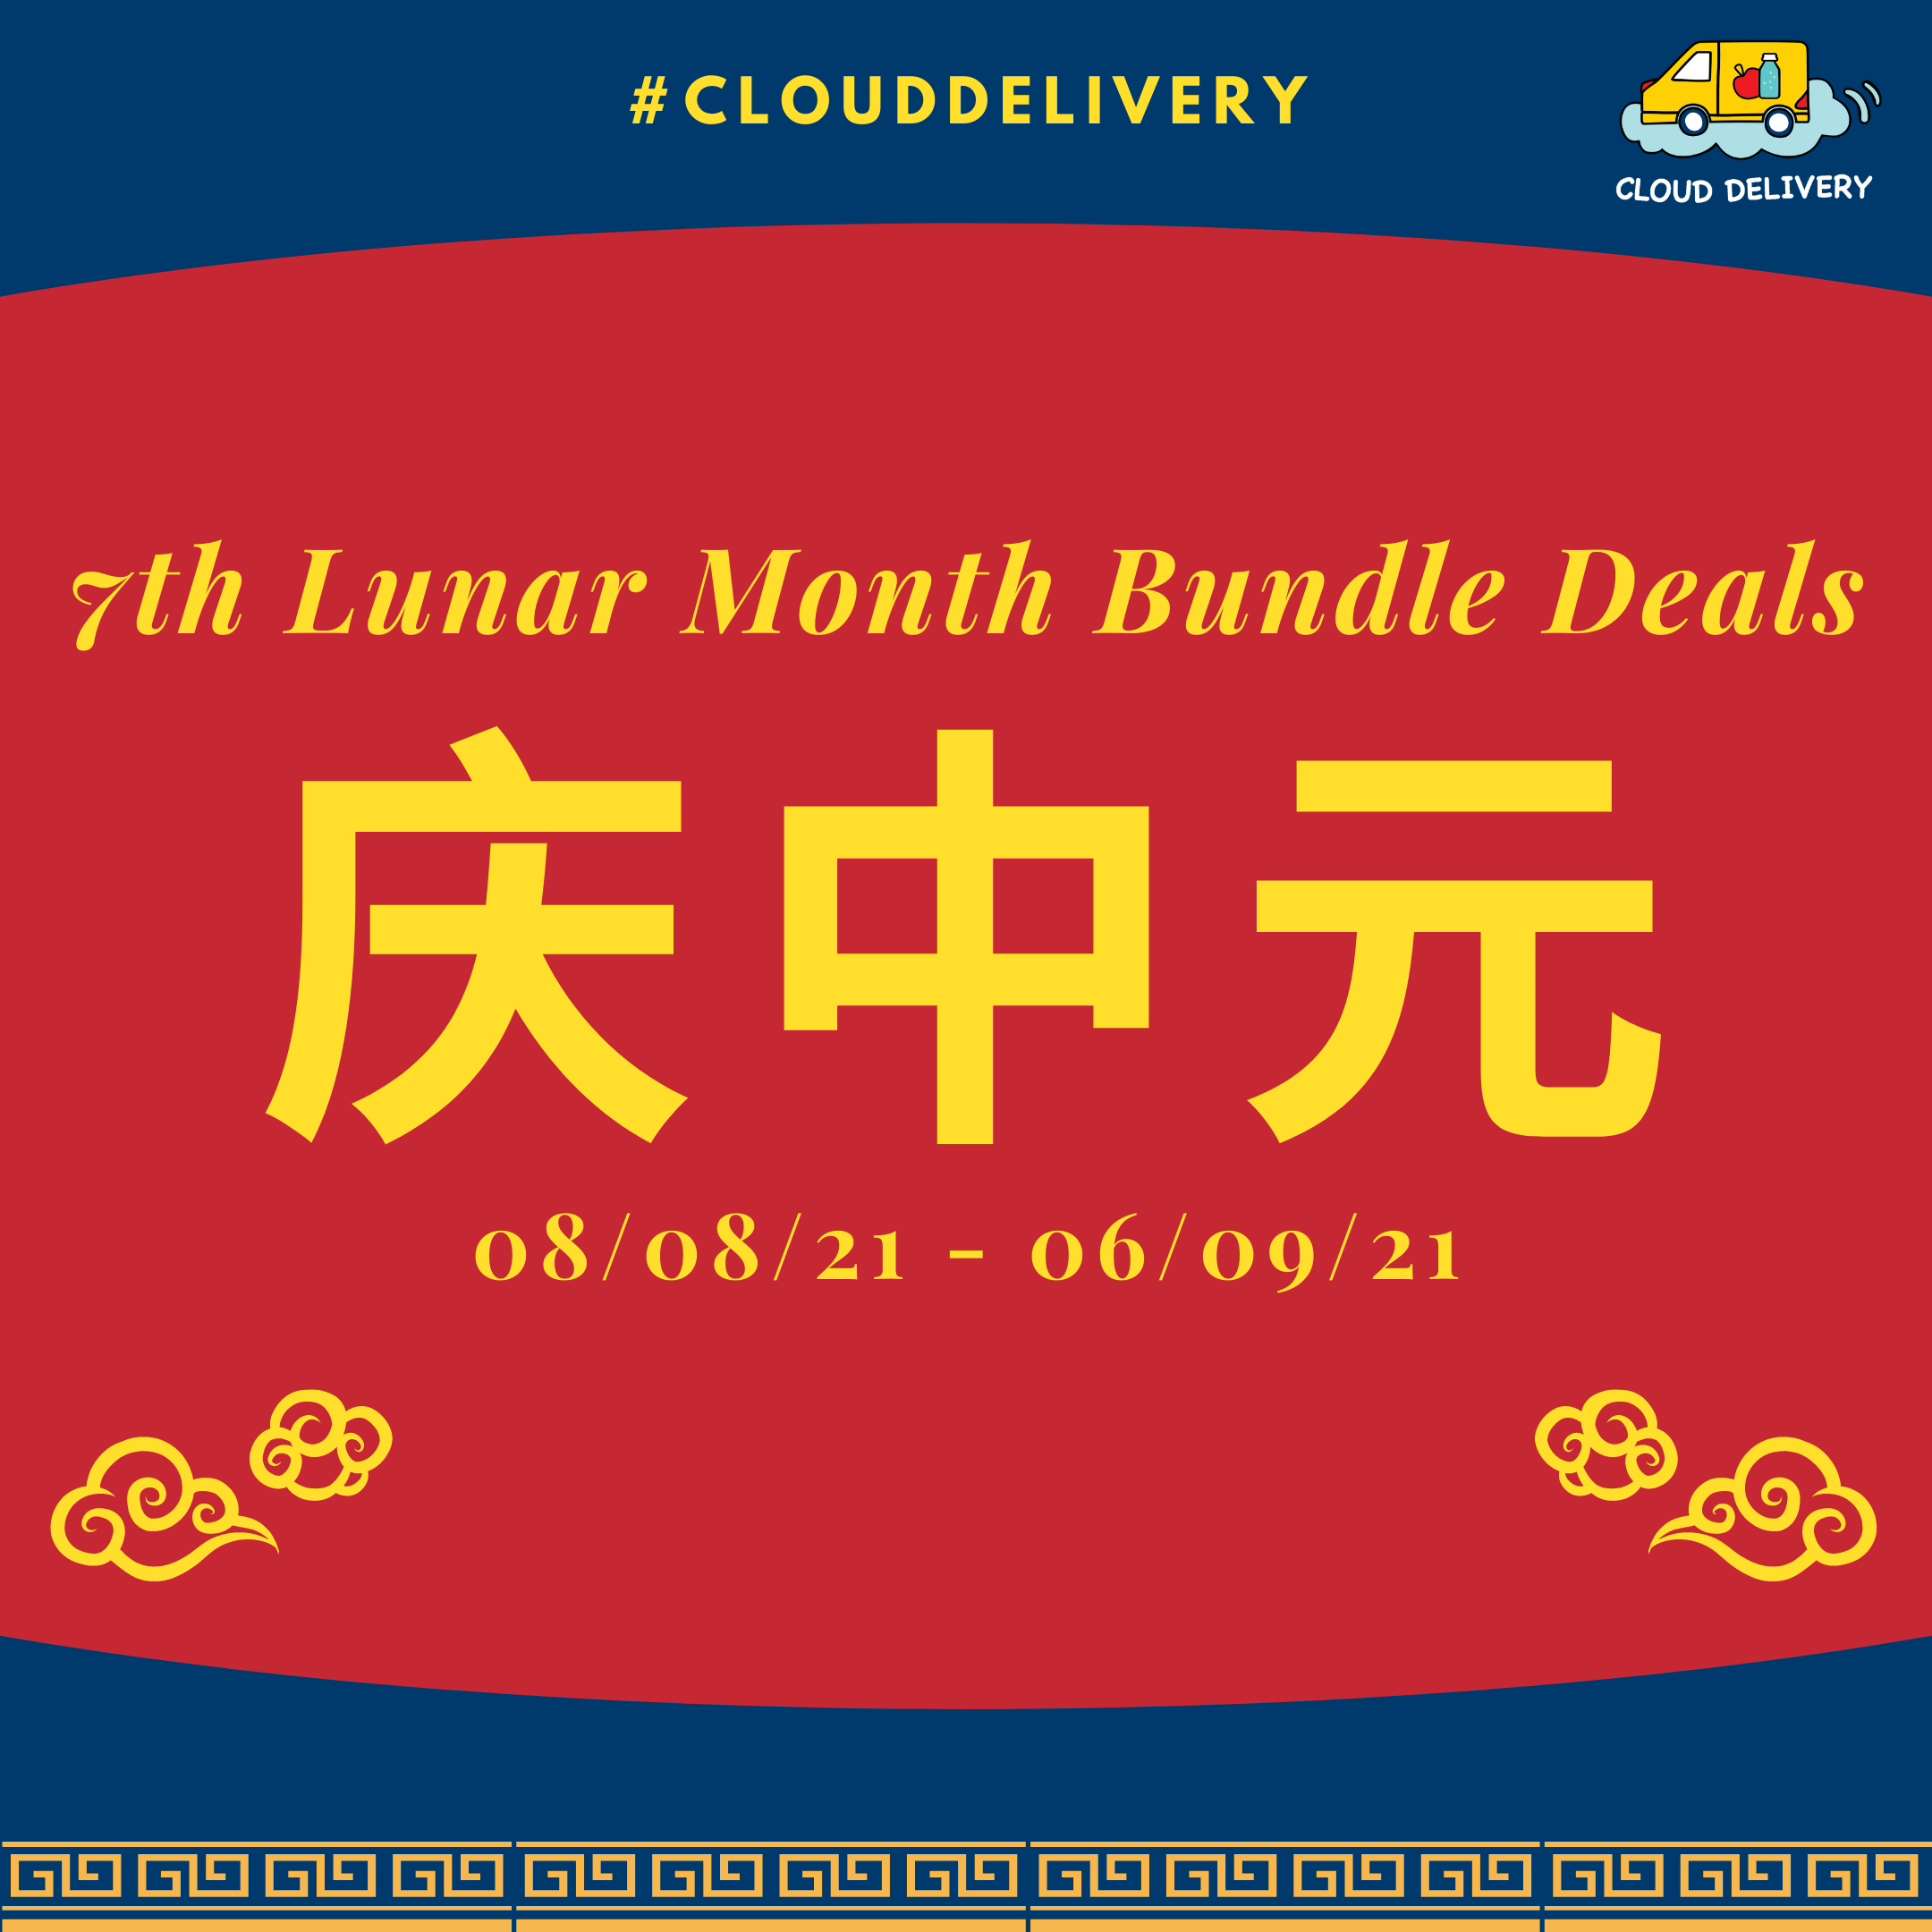 7th Lunar Month Bundle Deals